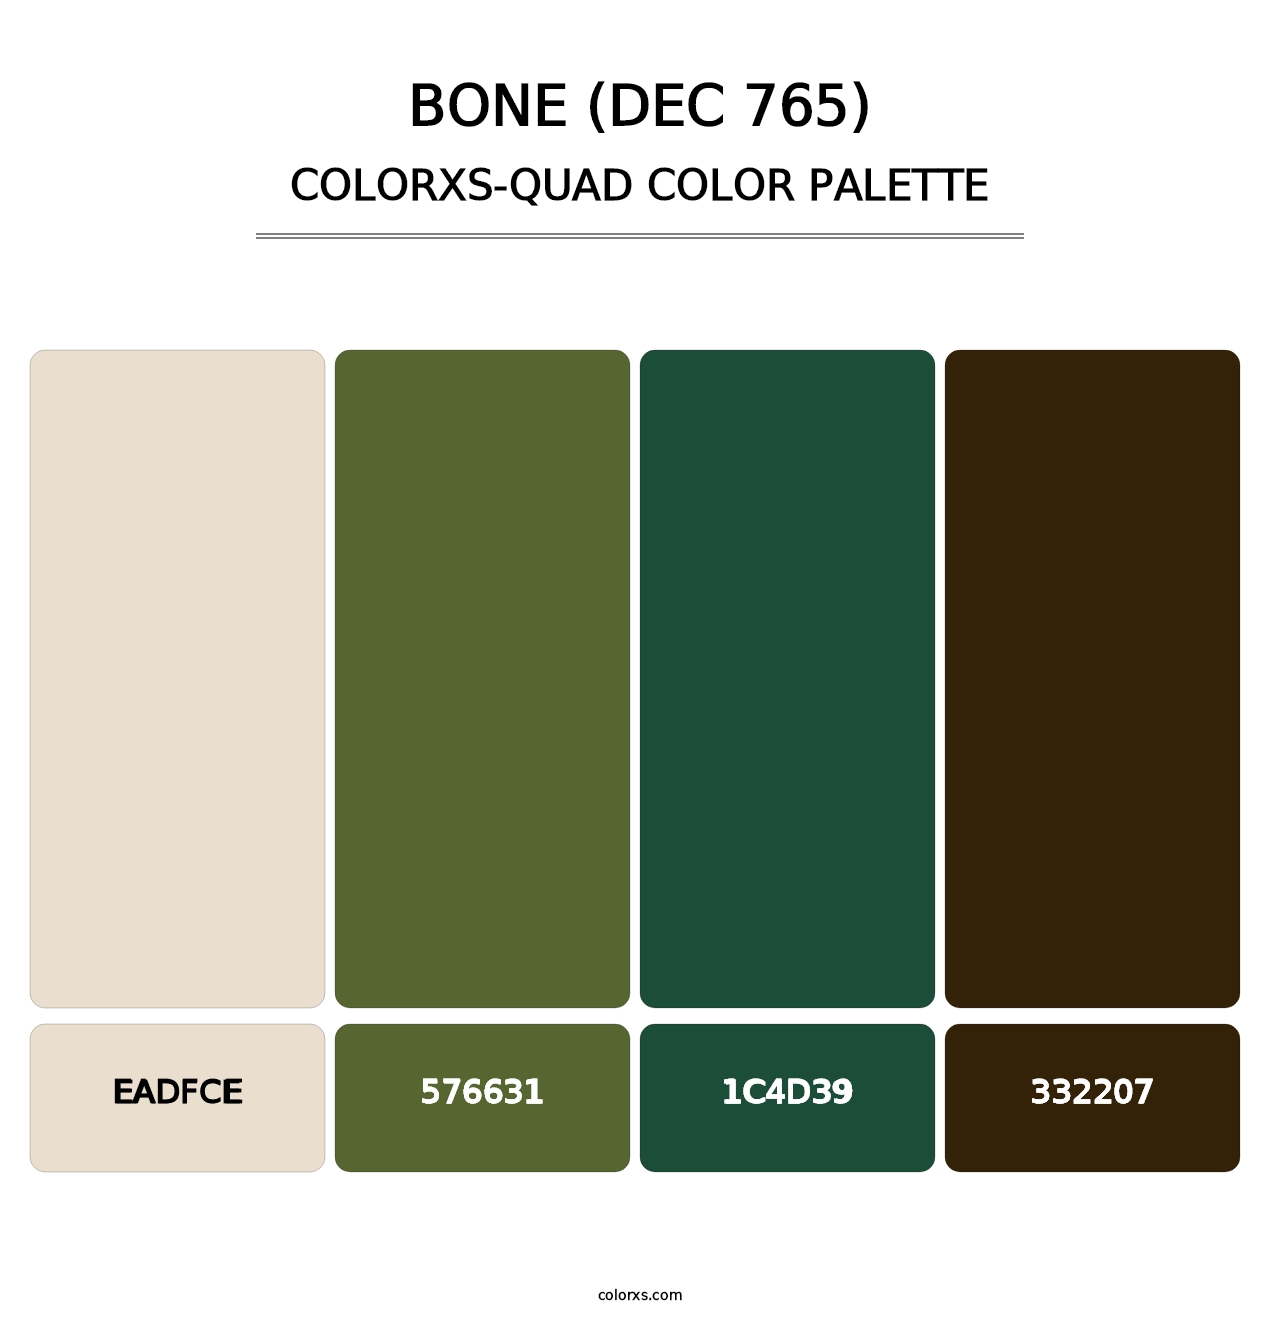 Bone (DEC 765) - Colorxs Quad Palette